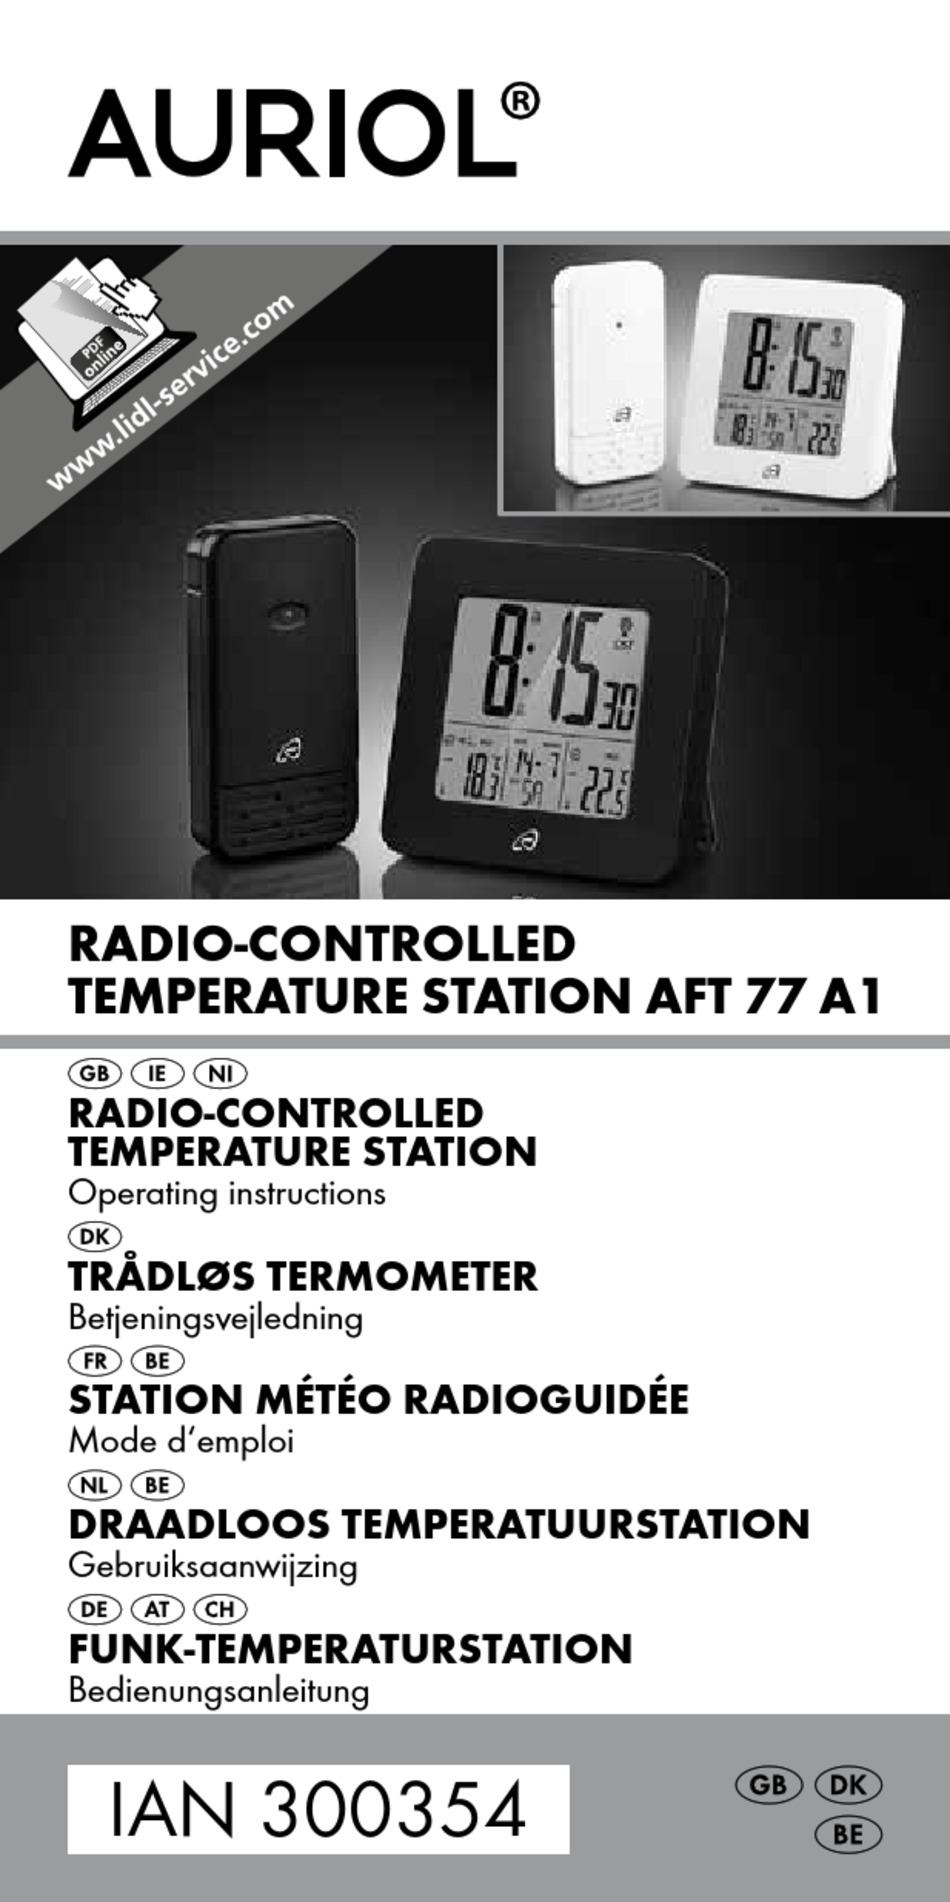 Station Meteo Auriol Notice Station Meteo Radioguidee Aft 77 A1 Kompernass Boutique En Ligne D Accessoires Et Pieces De Rechange Arriere De La Station Meteo Ciro Stryker